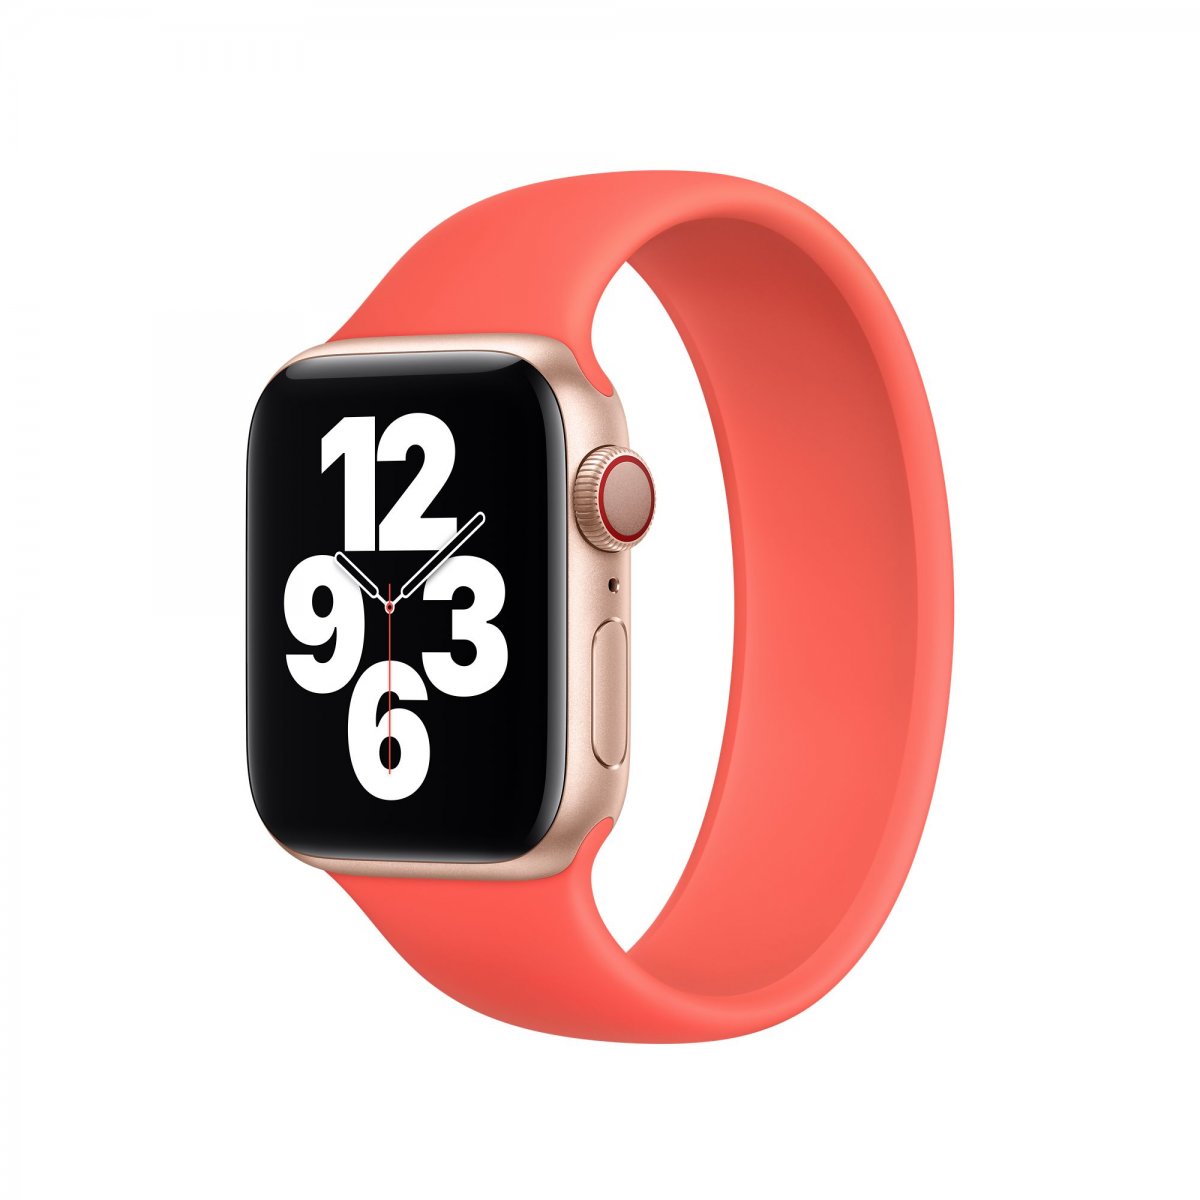 Řemínek iMore Solo Loop Apple Watch Series 1/2/3 42mm - Citrusově růžová (L)